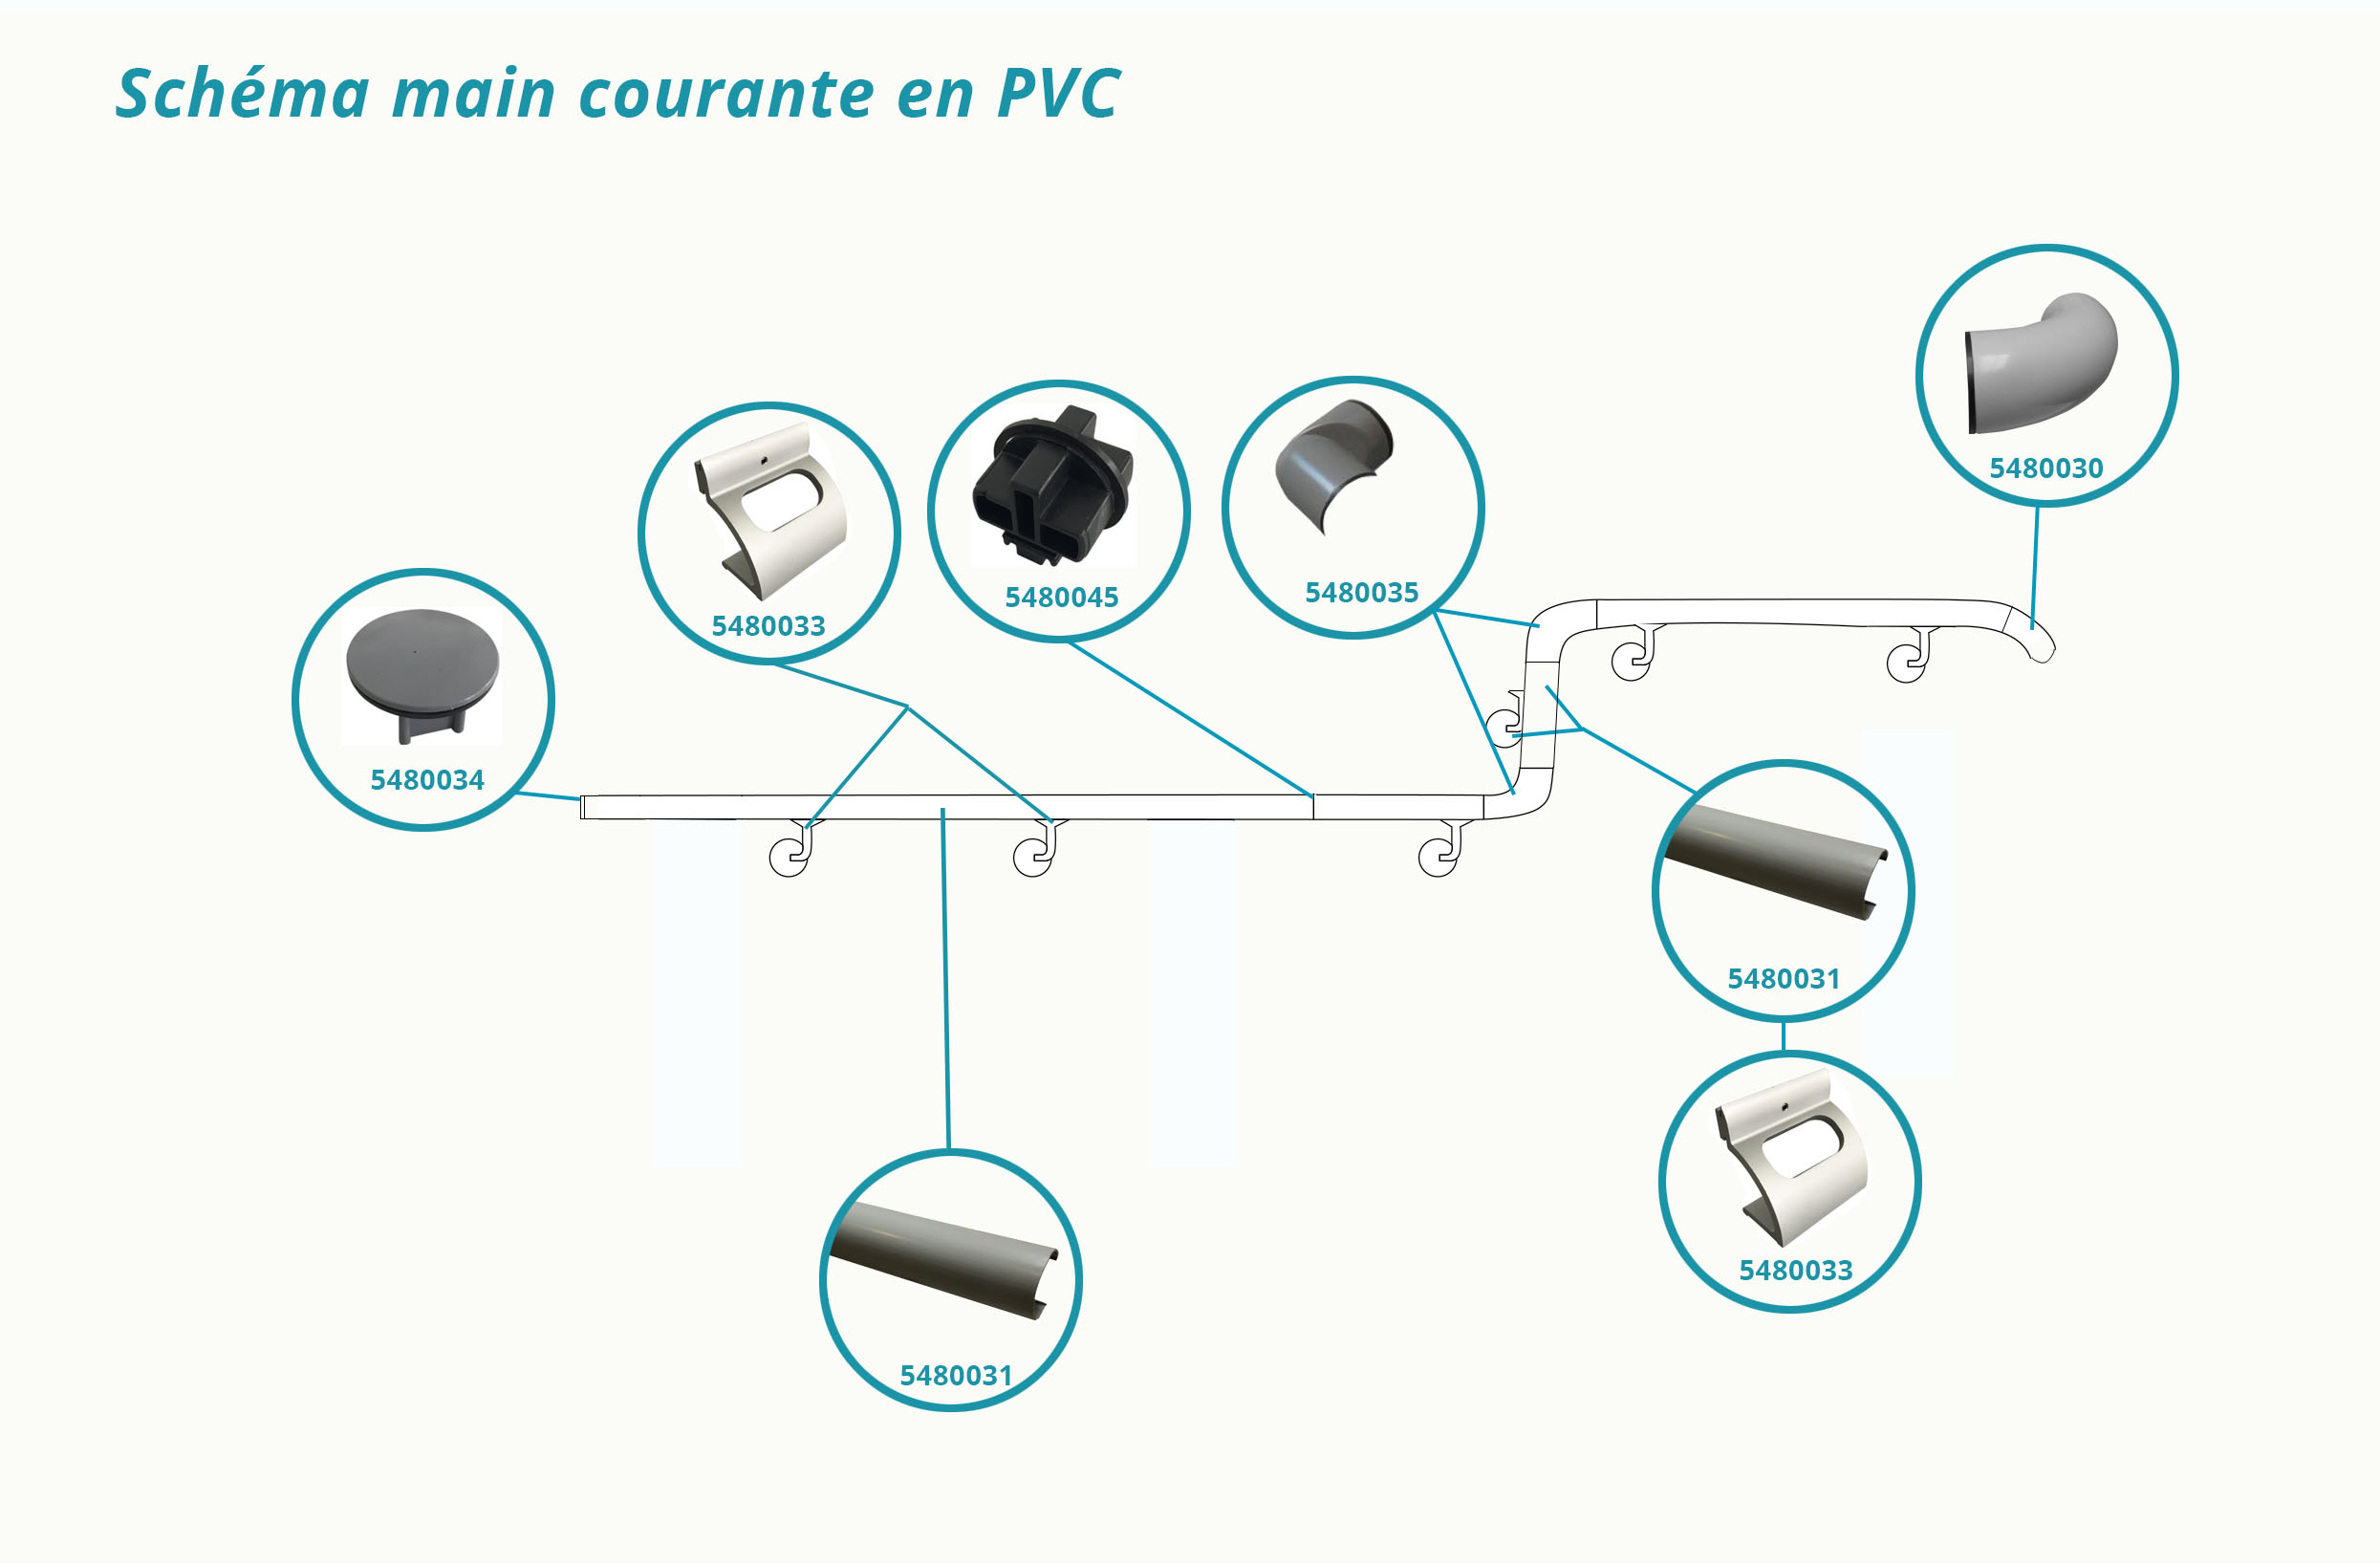 schéma main courante en PVC